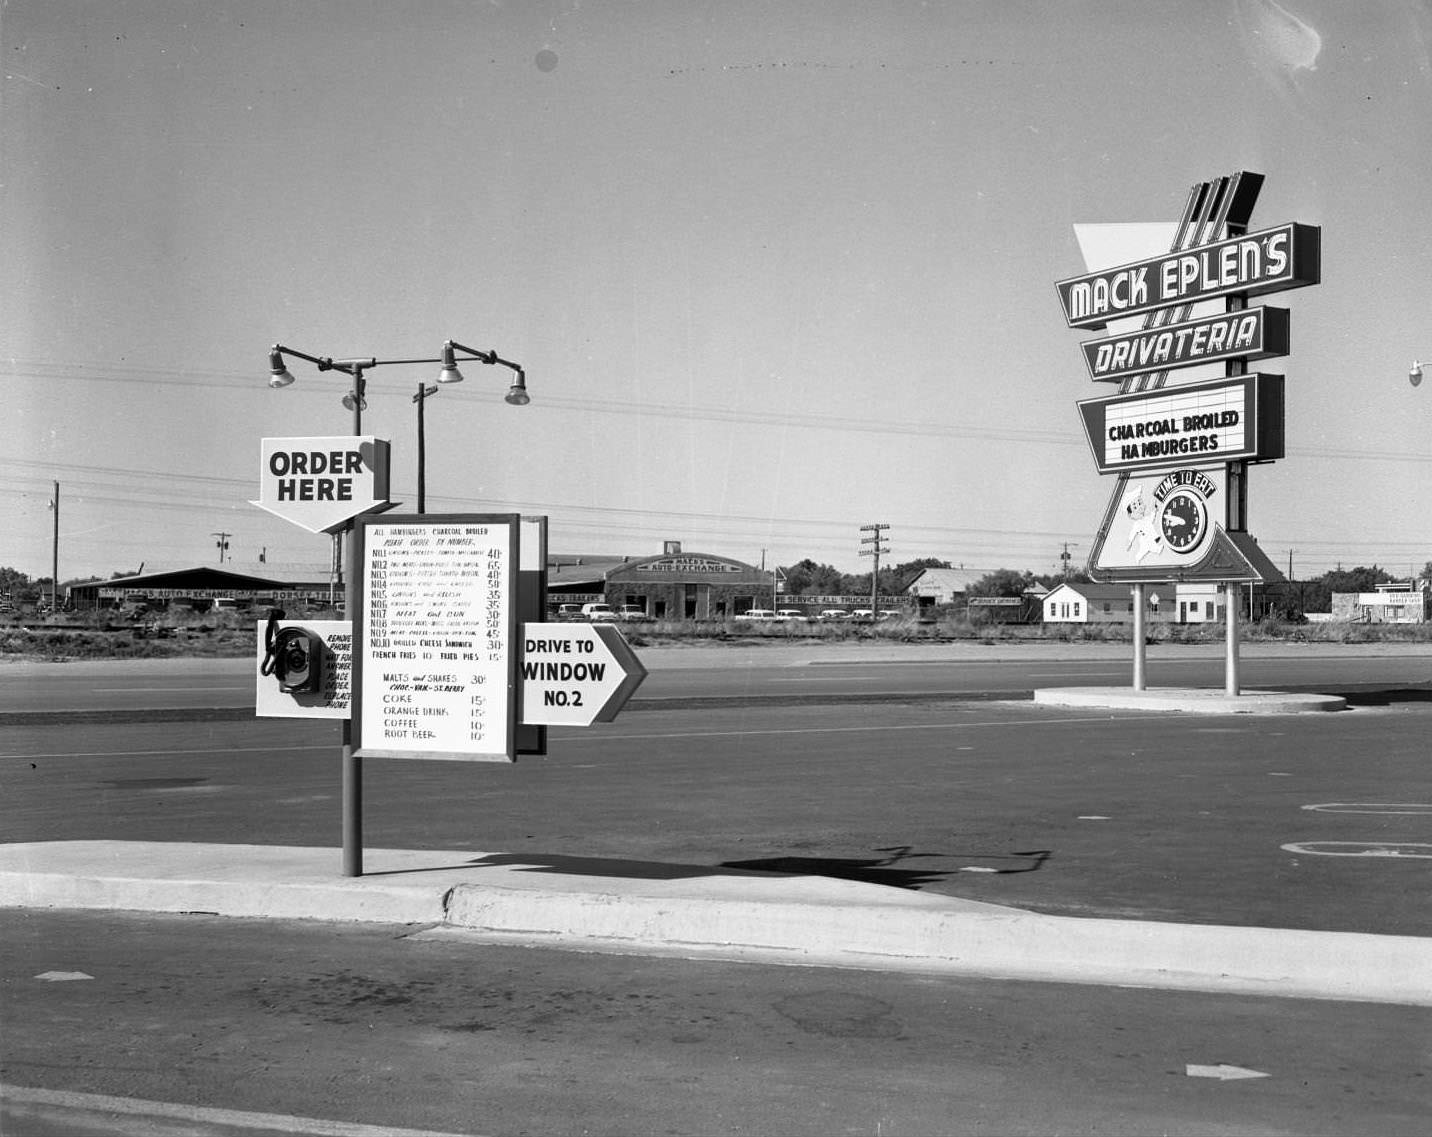 Mack Eplen's Drivateria on N. 1st St. in Abilene, 1956